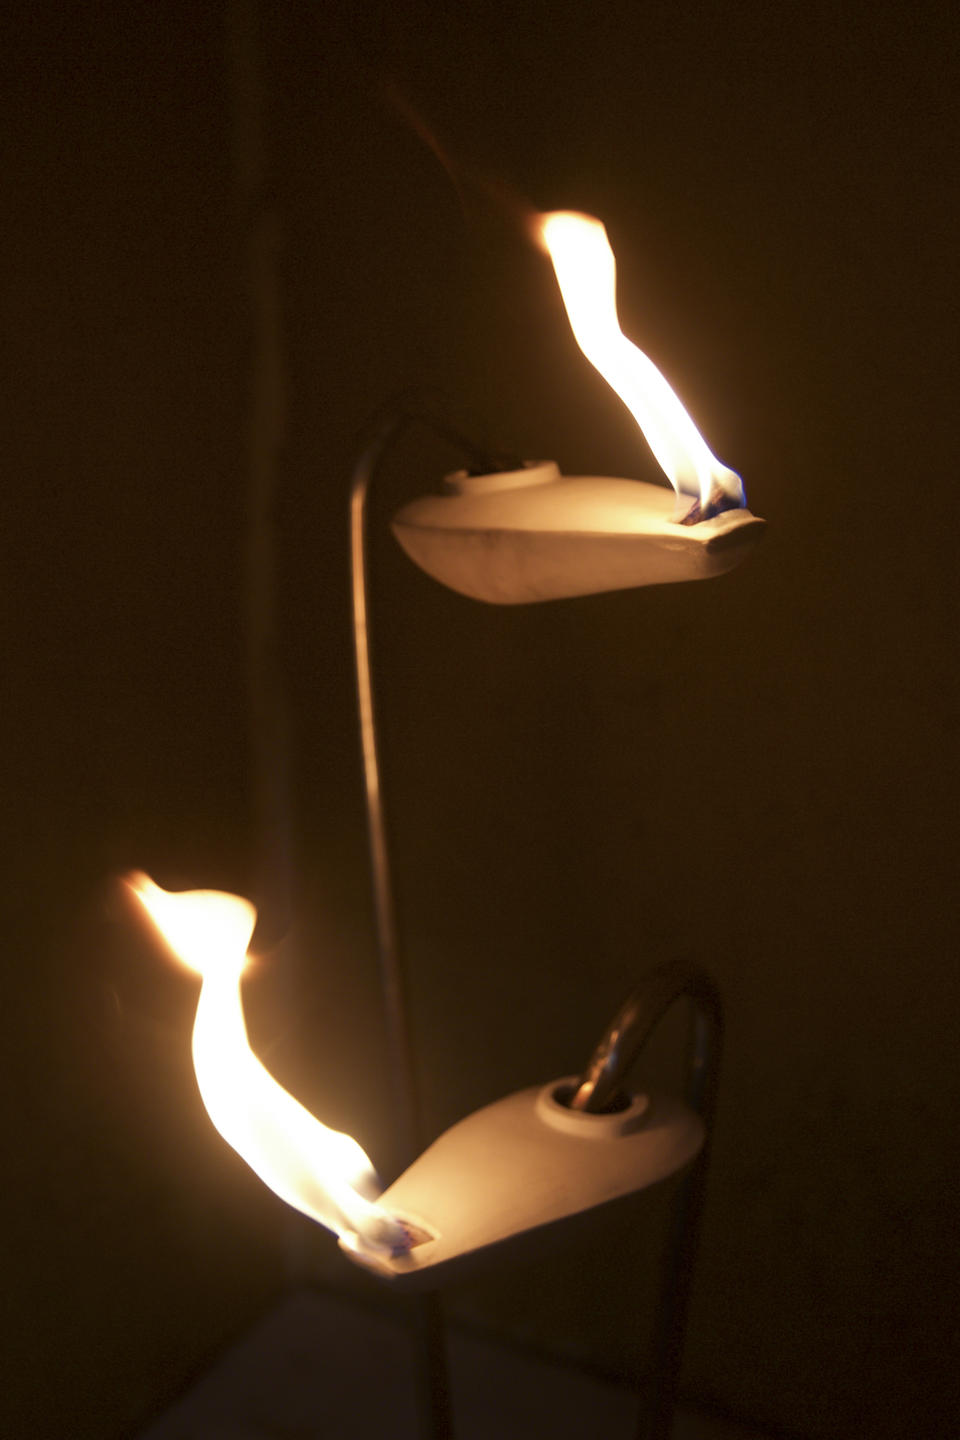 Detail of oil lamp by Jasper Johns